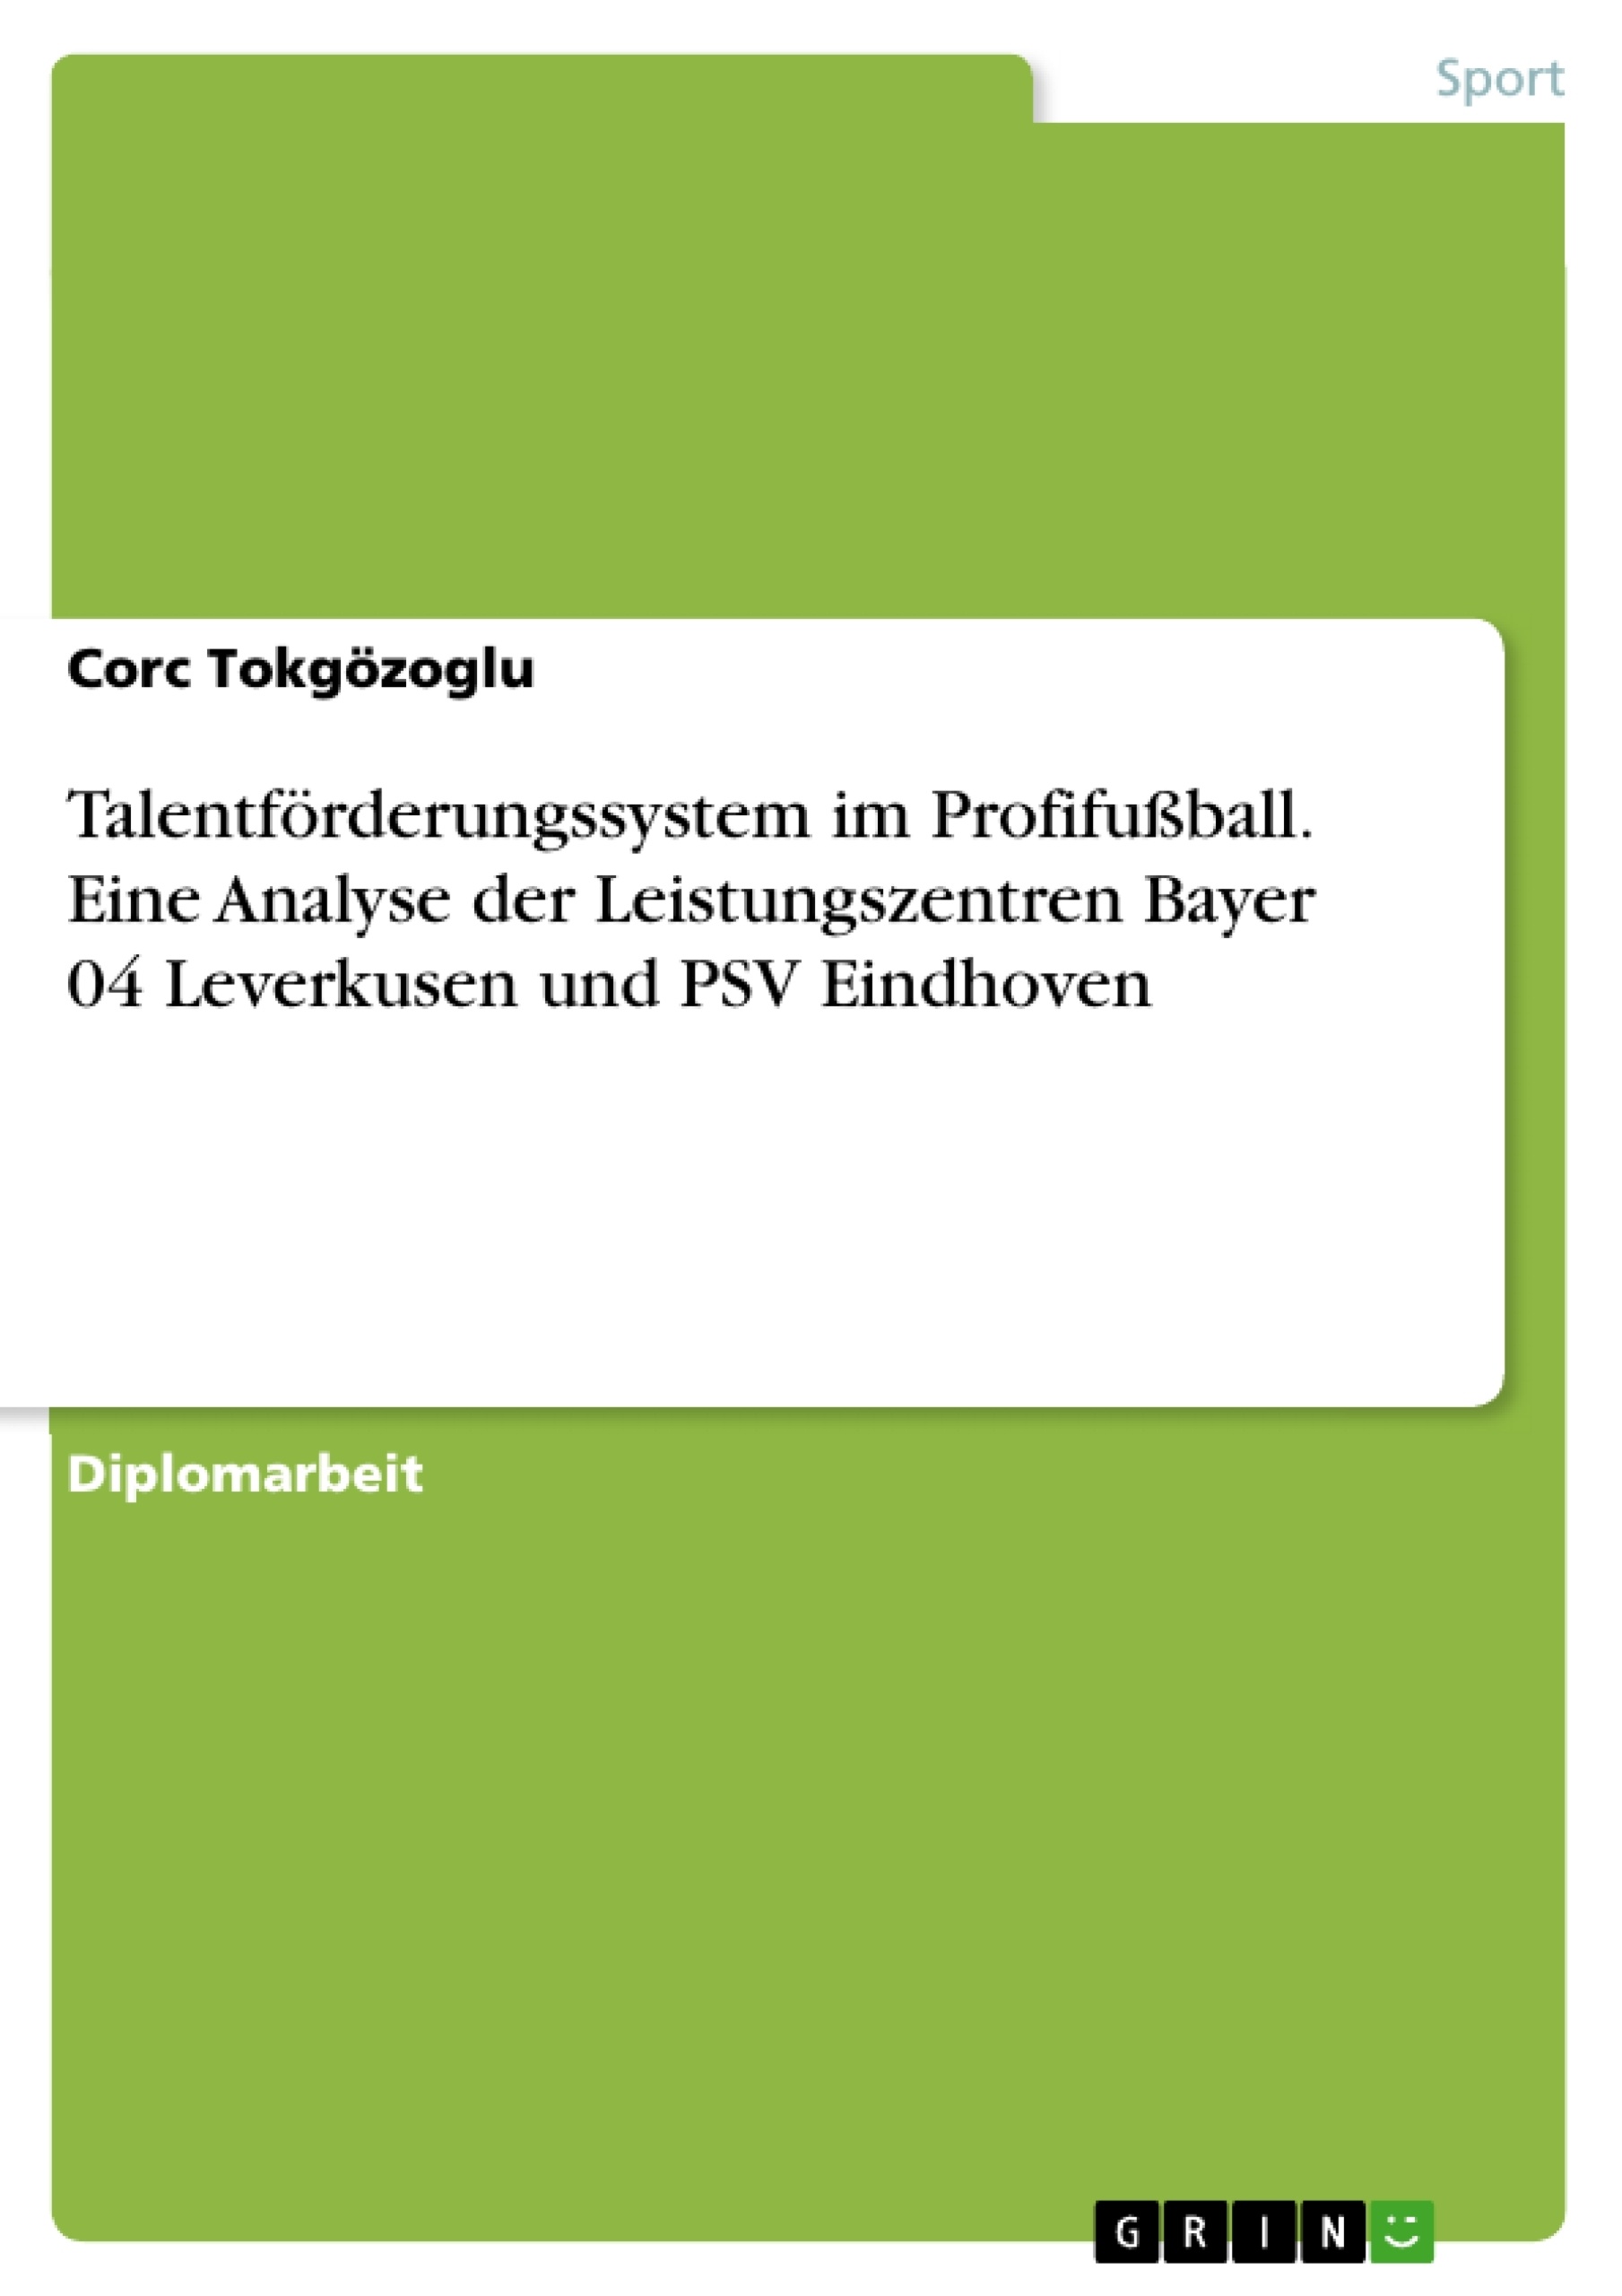 Title: Talentförderungssystem im Profifußball. Eine Analyse der Leistungszentren Bayer 04 Leverkusen und PSV Eindhoven